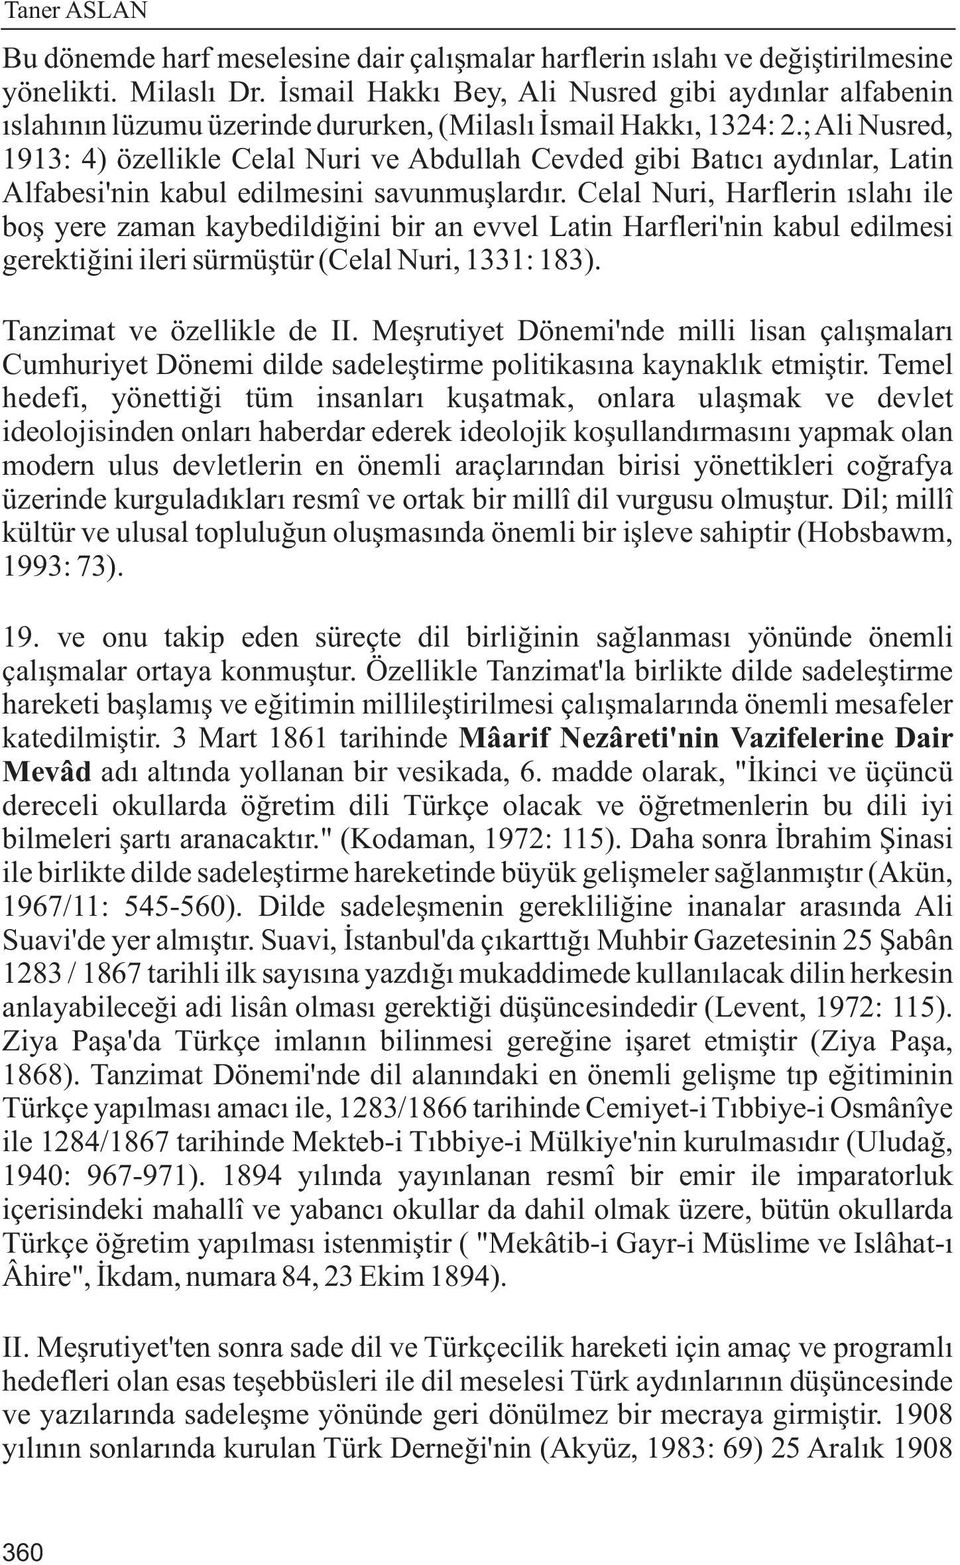 ; Ali Nusred, 1913: 4) özellikle Celal Nuri ve Abdullah Cevded gibi Batýcý aydýnlar, Latin Alfabesi'nin kabul edilmesini savunmuþlardýr.